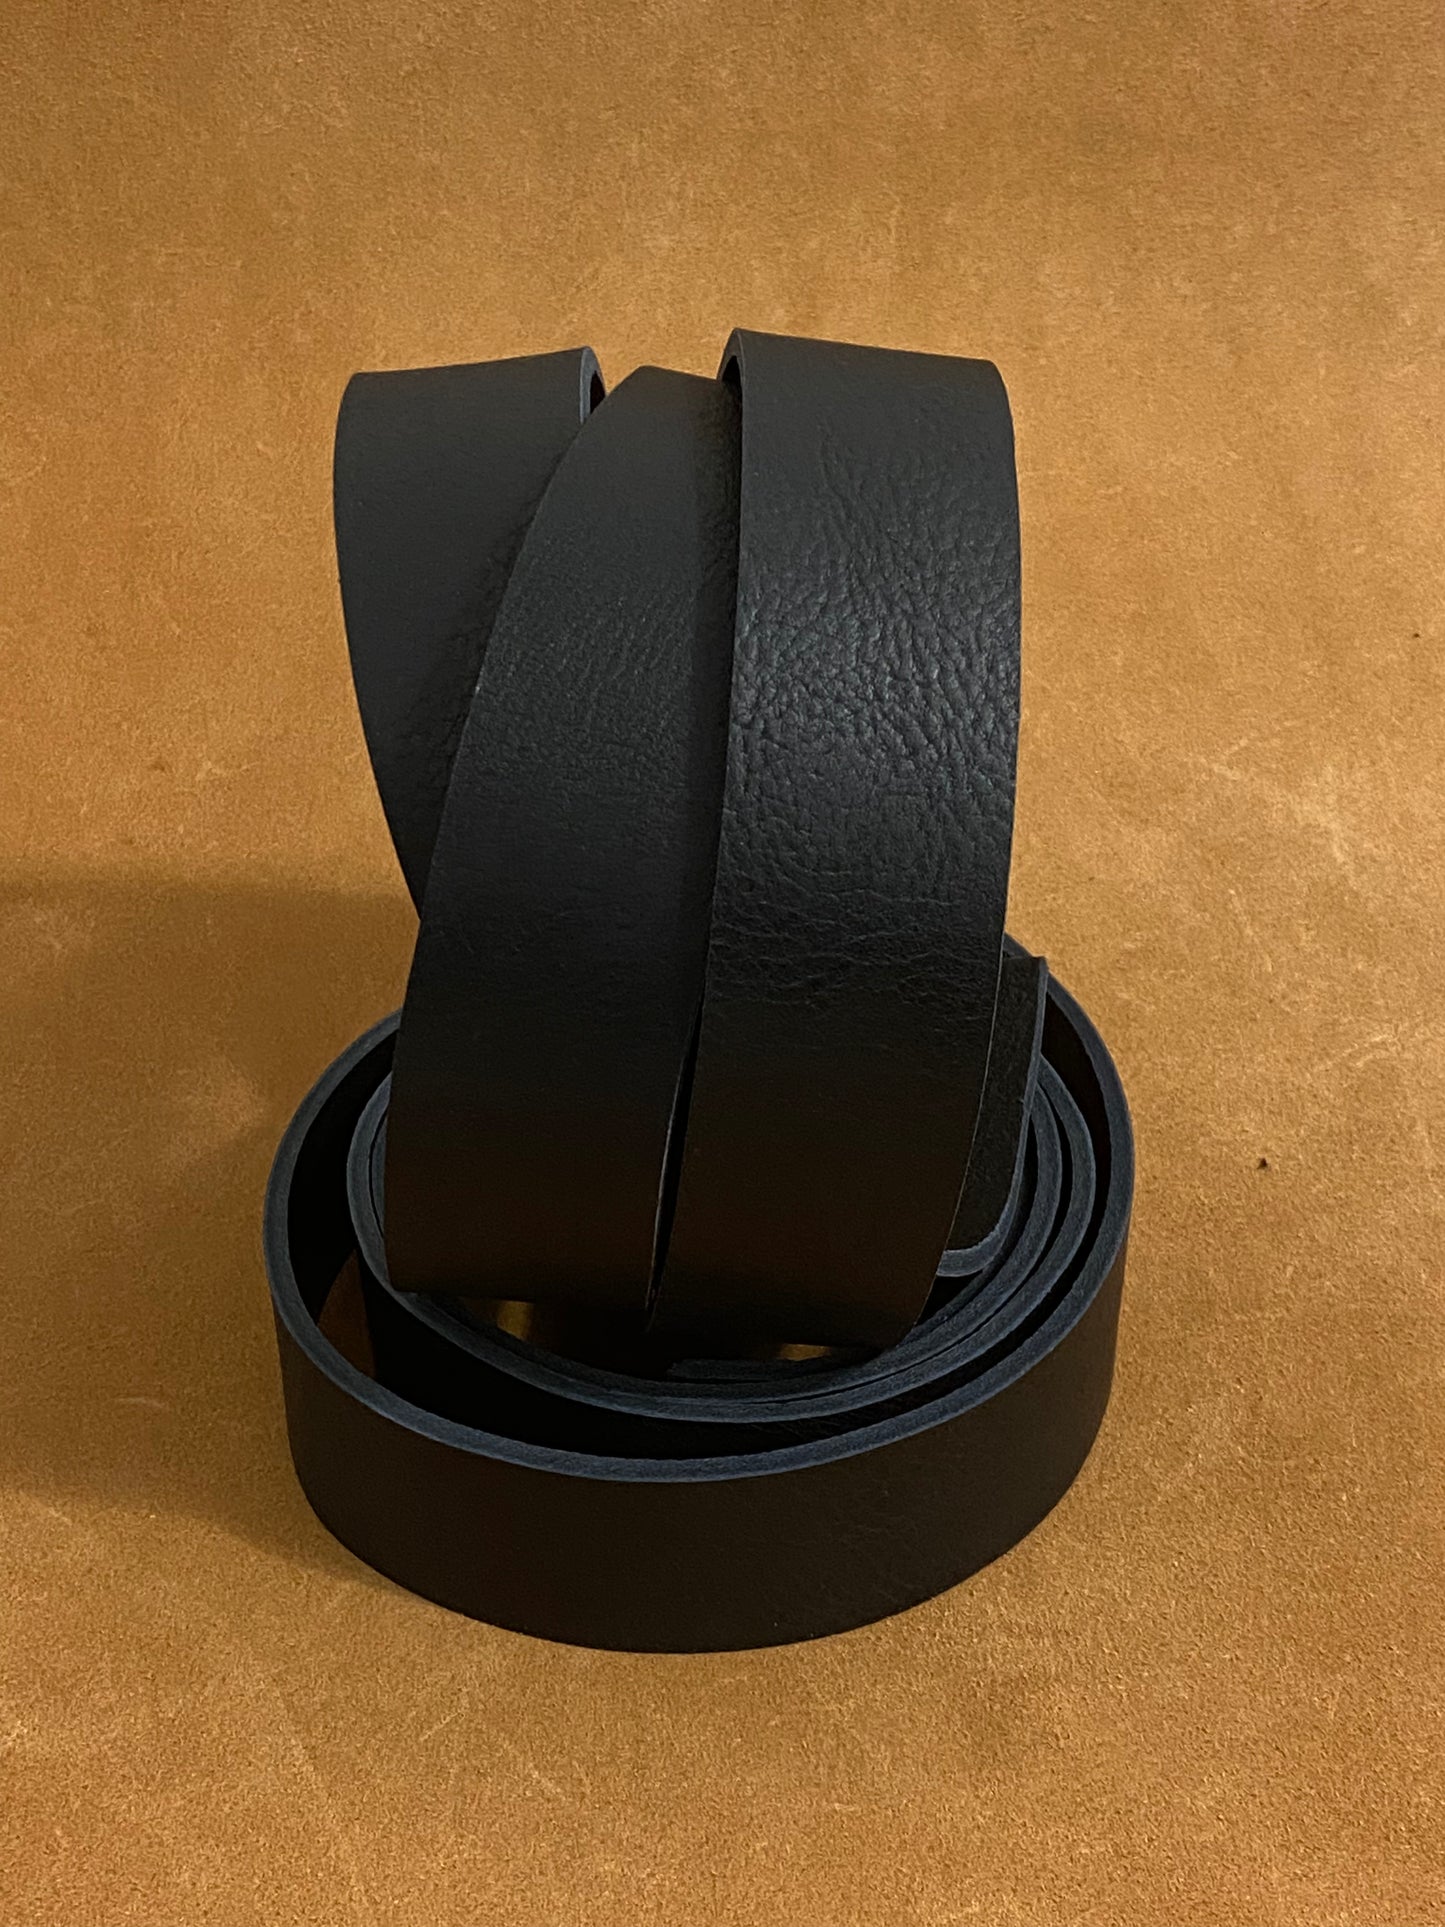 Schwarz gemillt Riemen 3,5-3,8 mm  135 cm